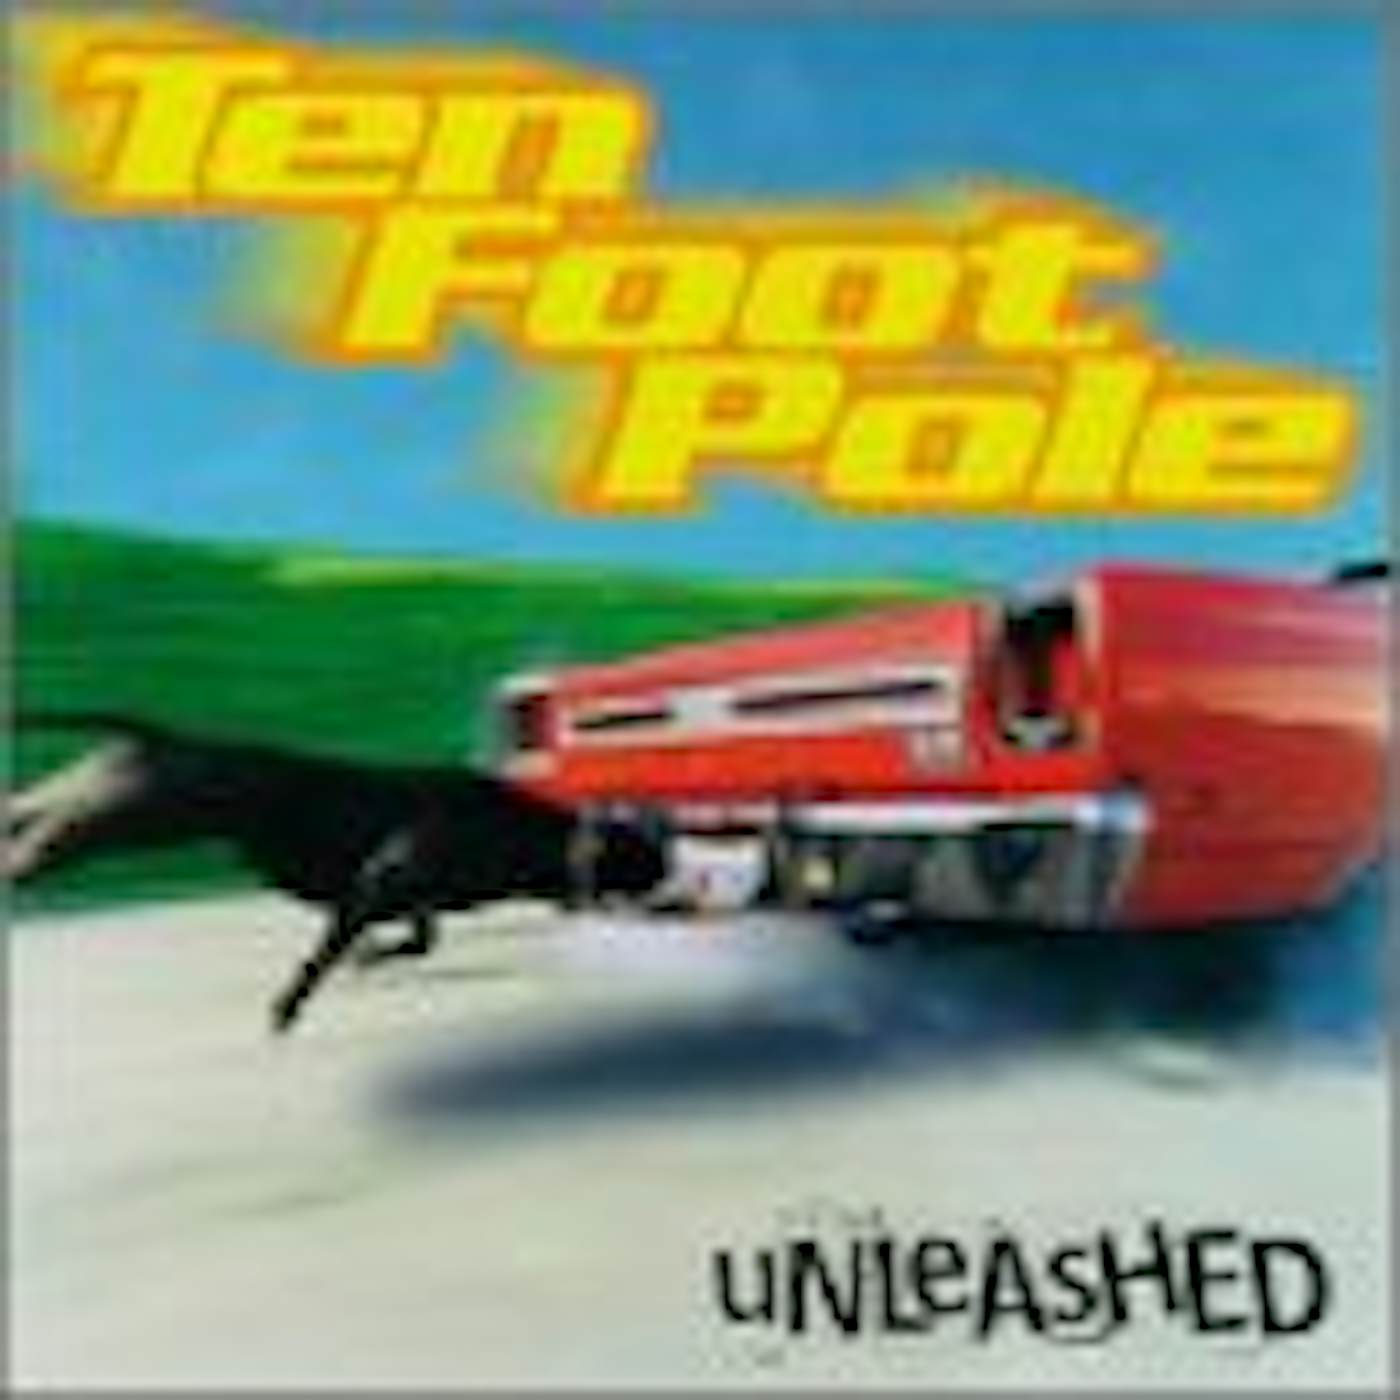 Ten Foot Pole UNLEASHED CD